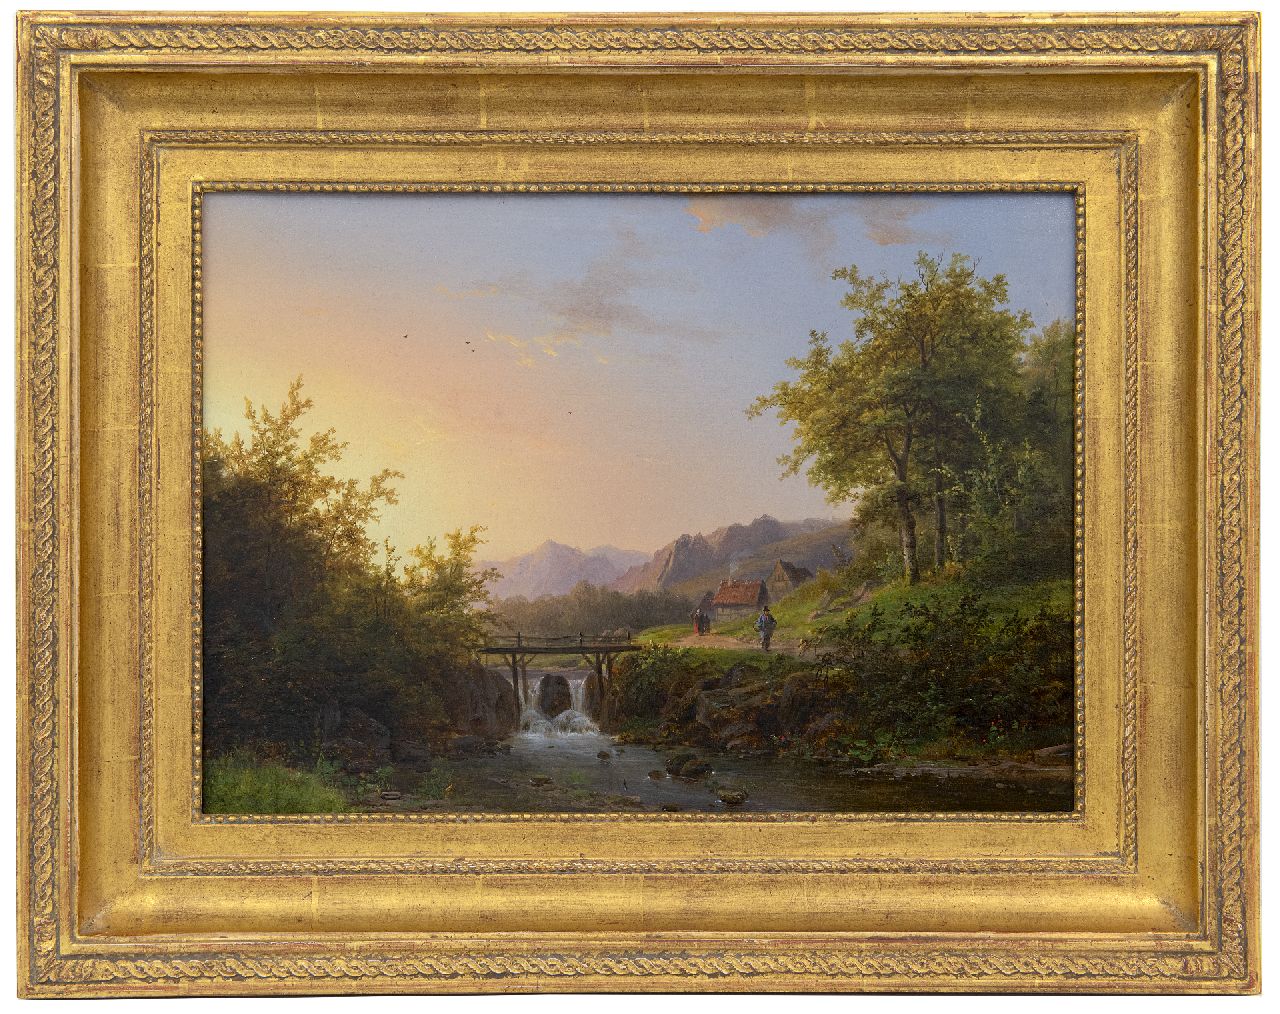 Klombeck J.B.  | Johann Bernard Klombeck | Schilderijen te koop aangeboden | Zomers beeklandschap met waterval, olieverf op paneel 29,7 x 41,1 cm, gesigneerd rechtsonder en gedateerd 1847